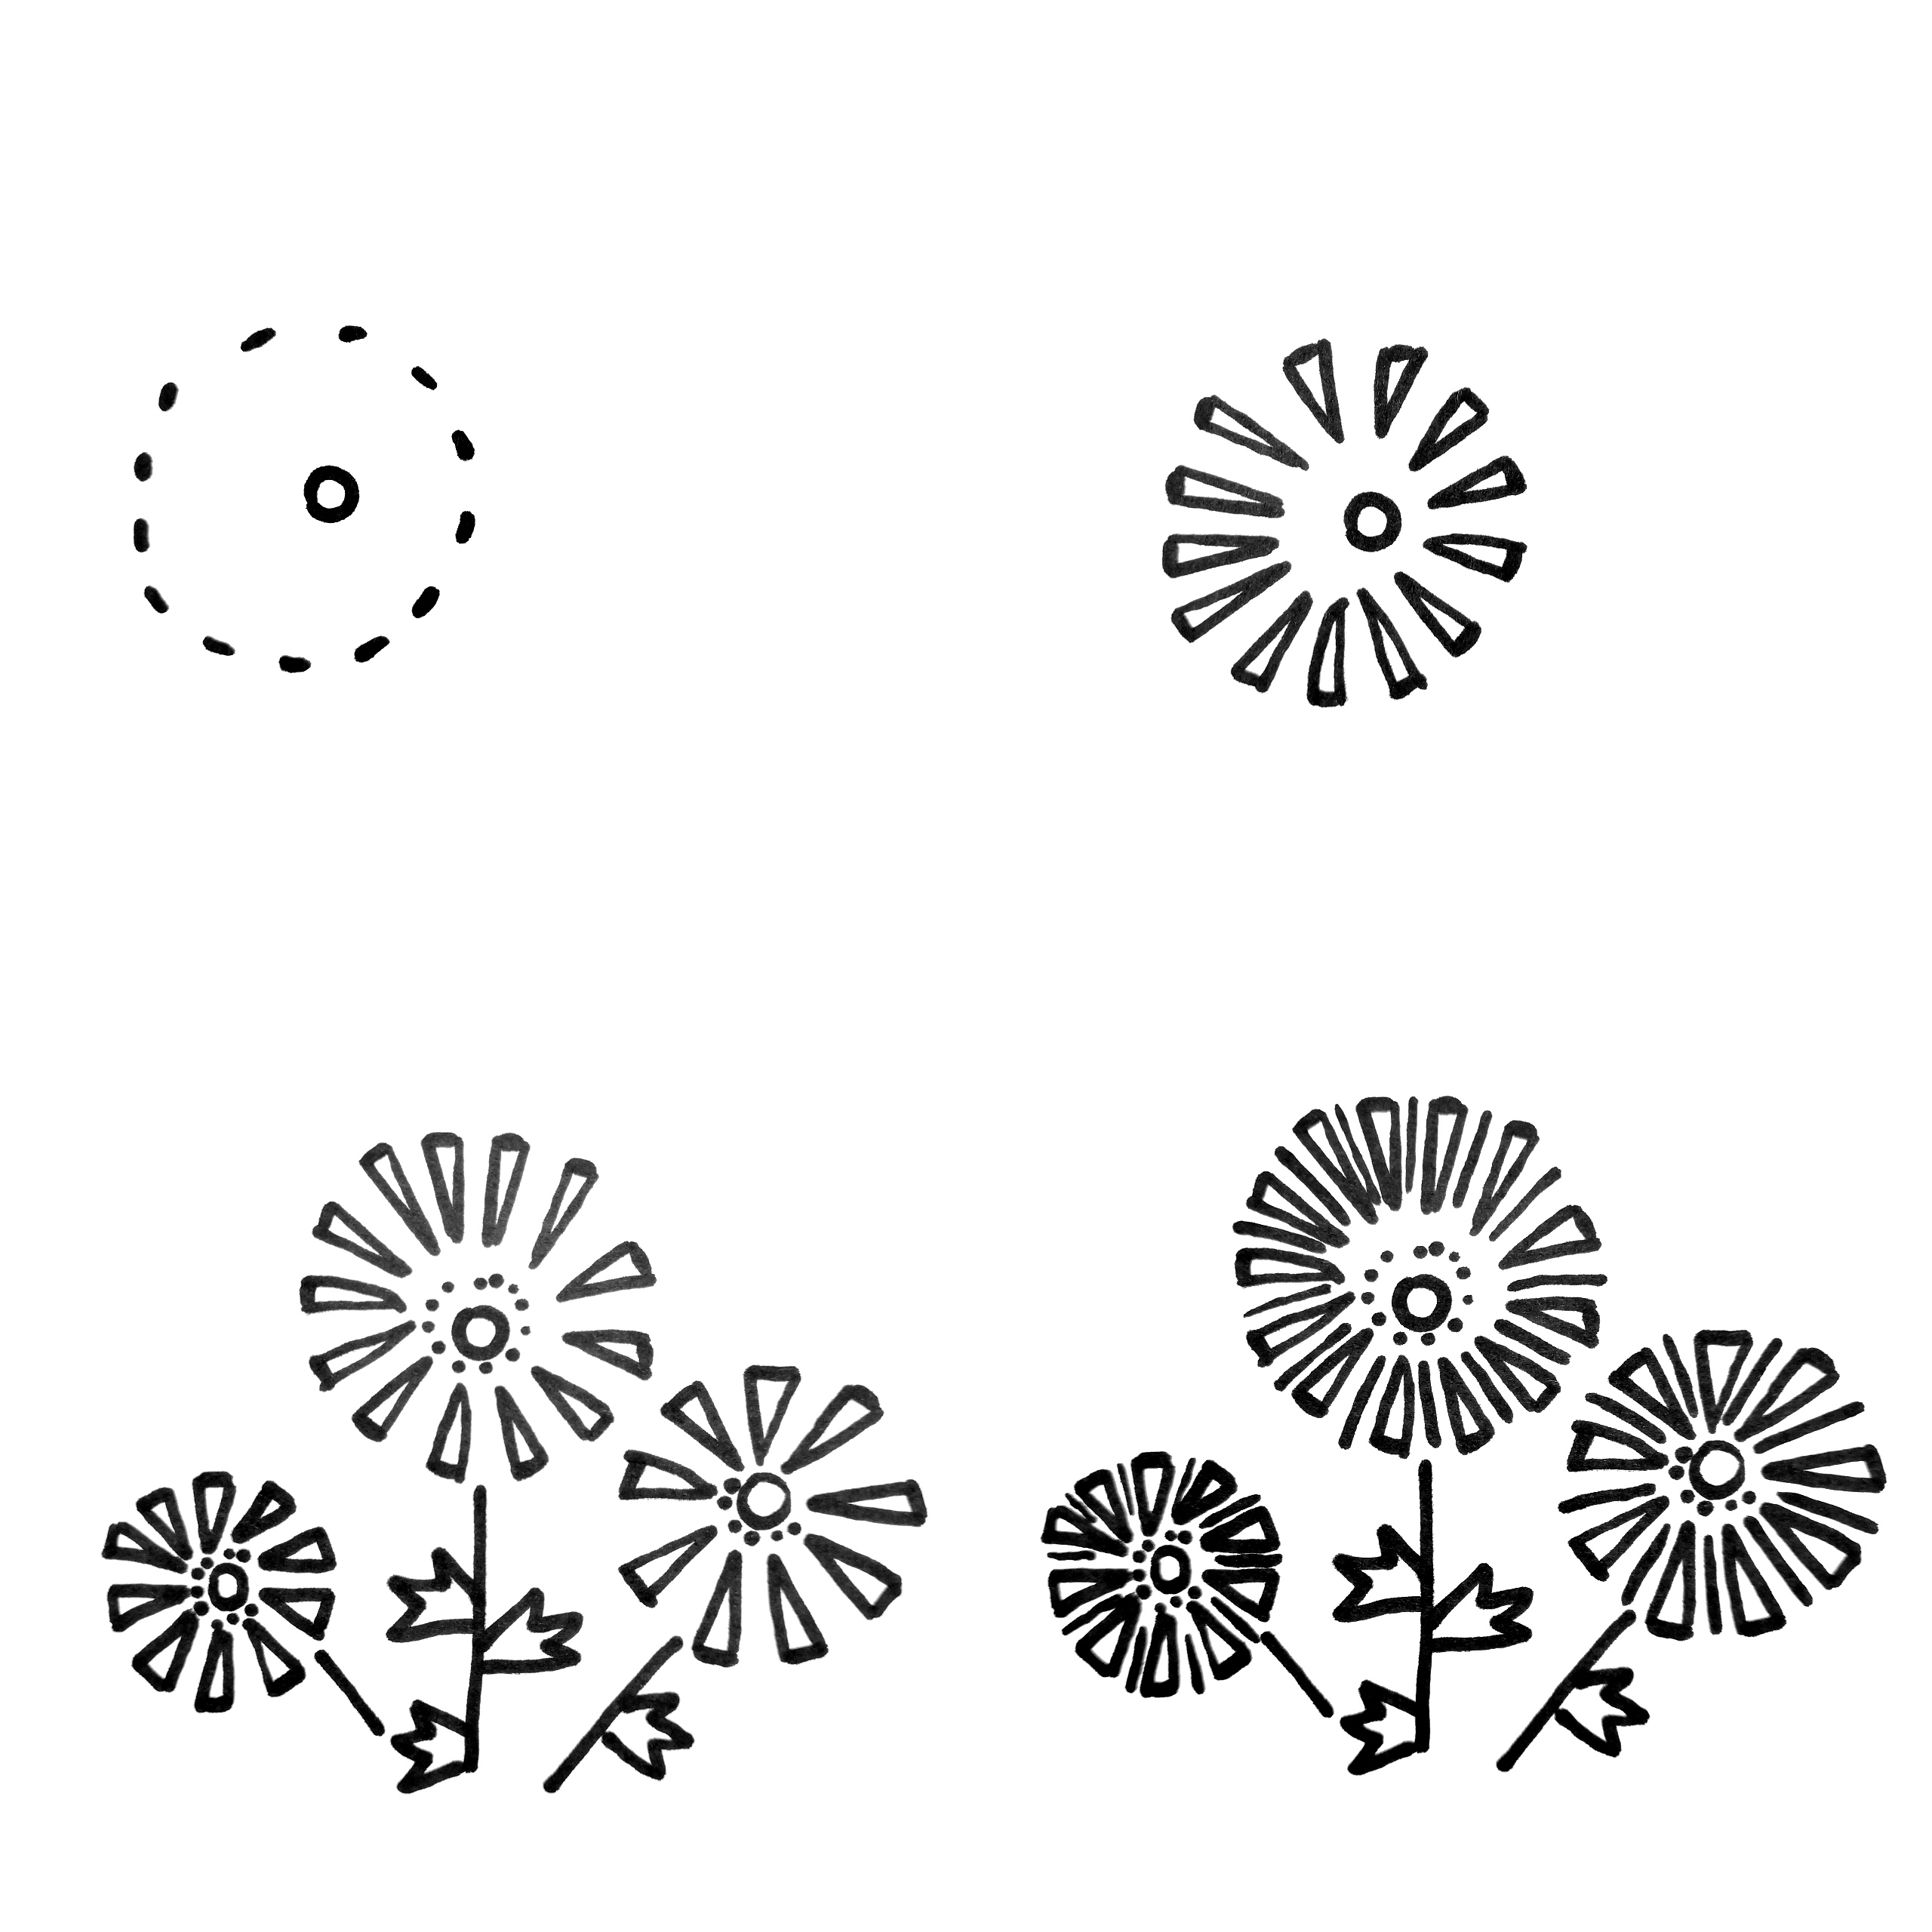 育儿简笔画植物篇：吉祥的菊花绘画步骤图解 | 采芊迷